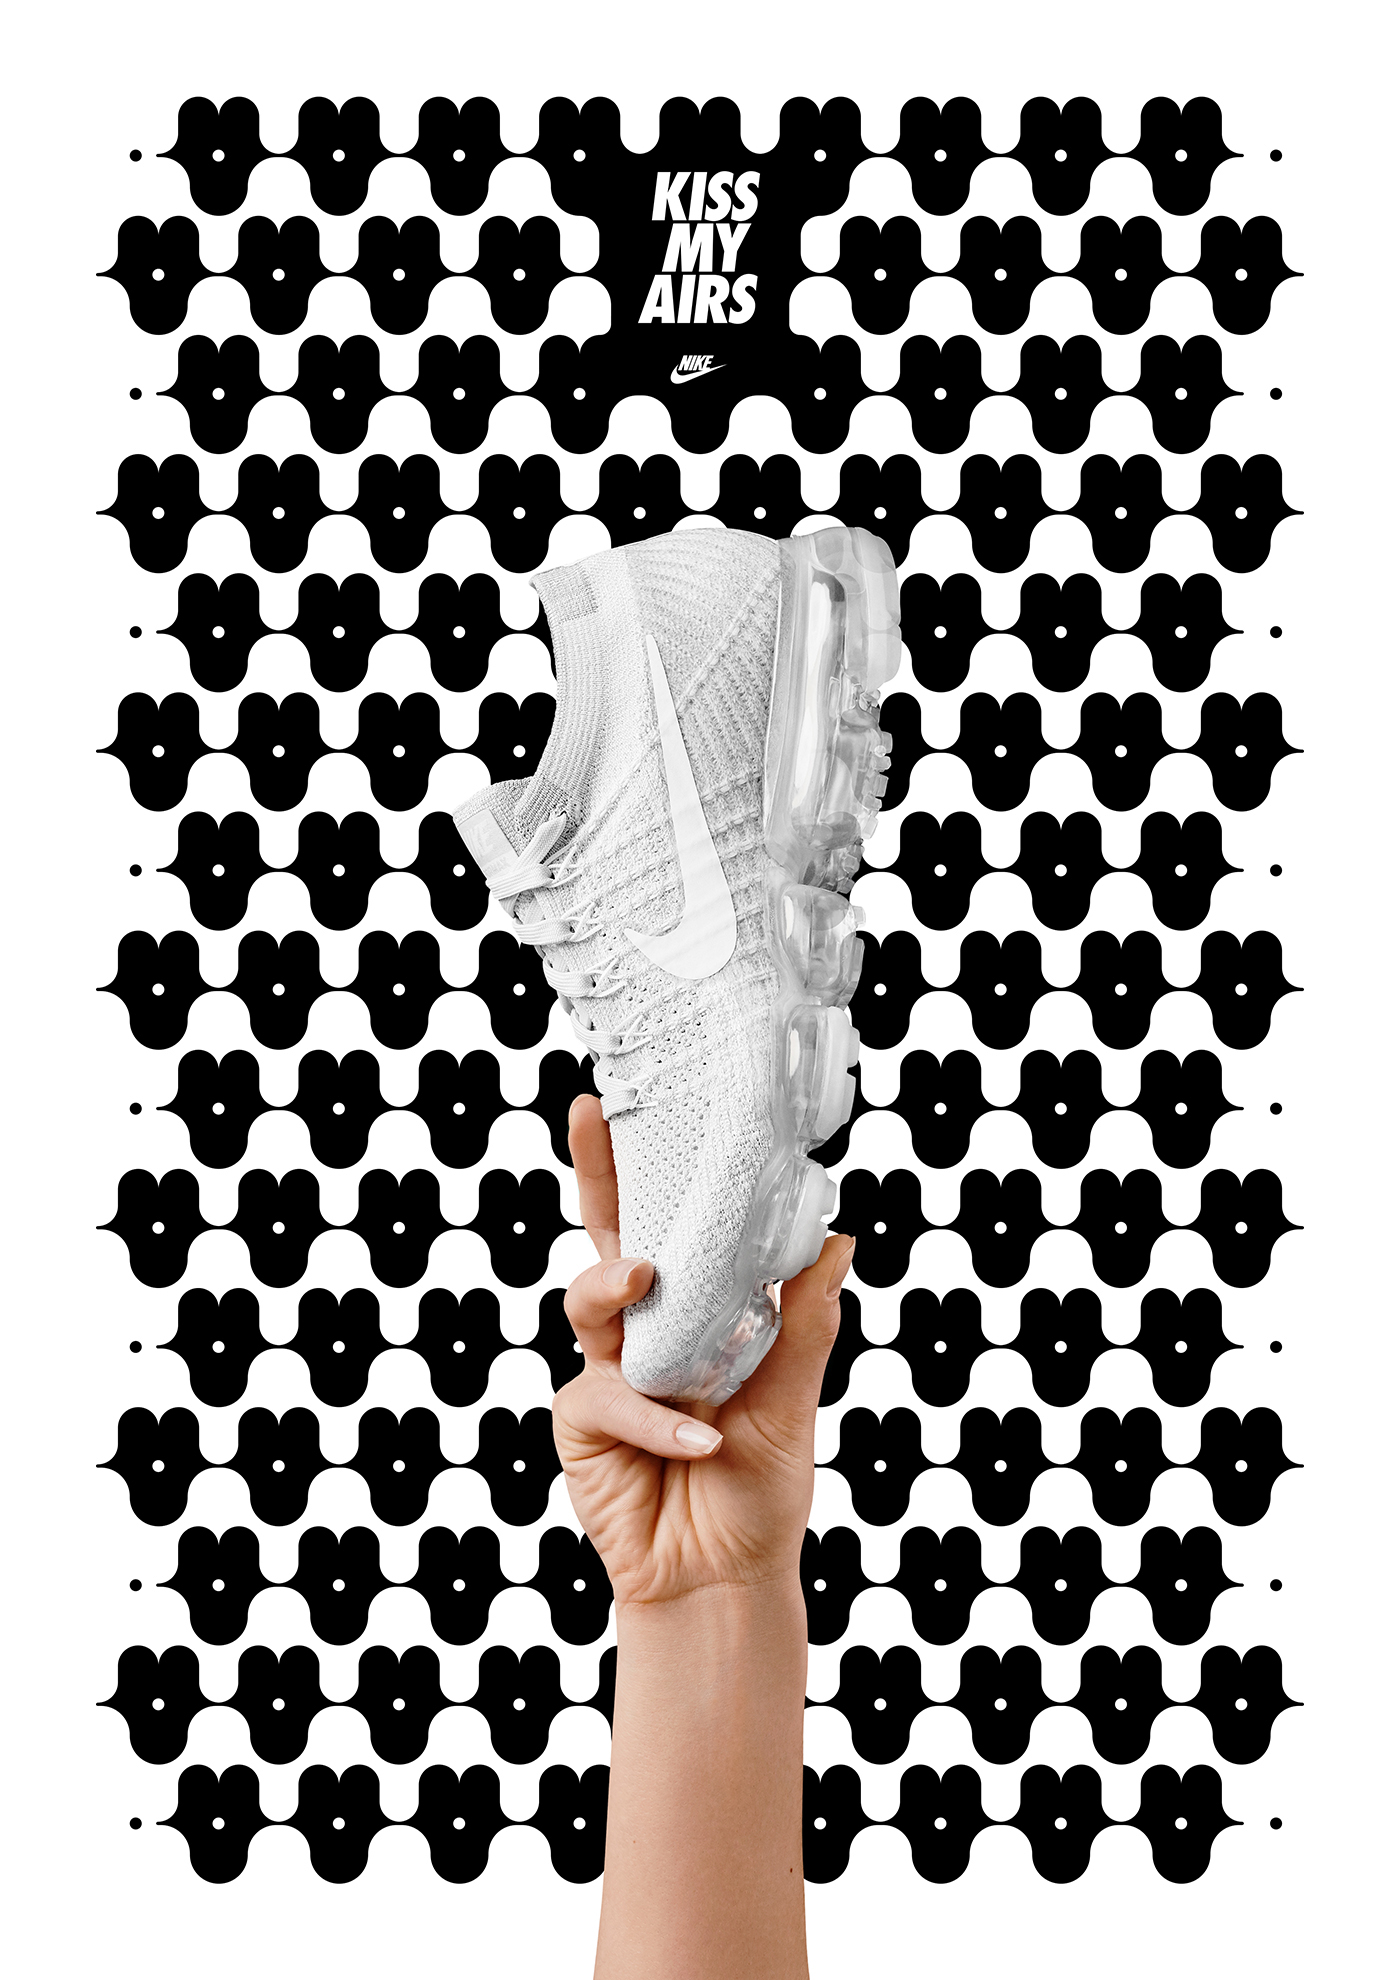 Nike air max poster contest jacek rudzki Znajomy Grafik sneakers